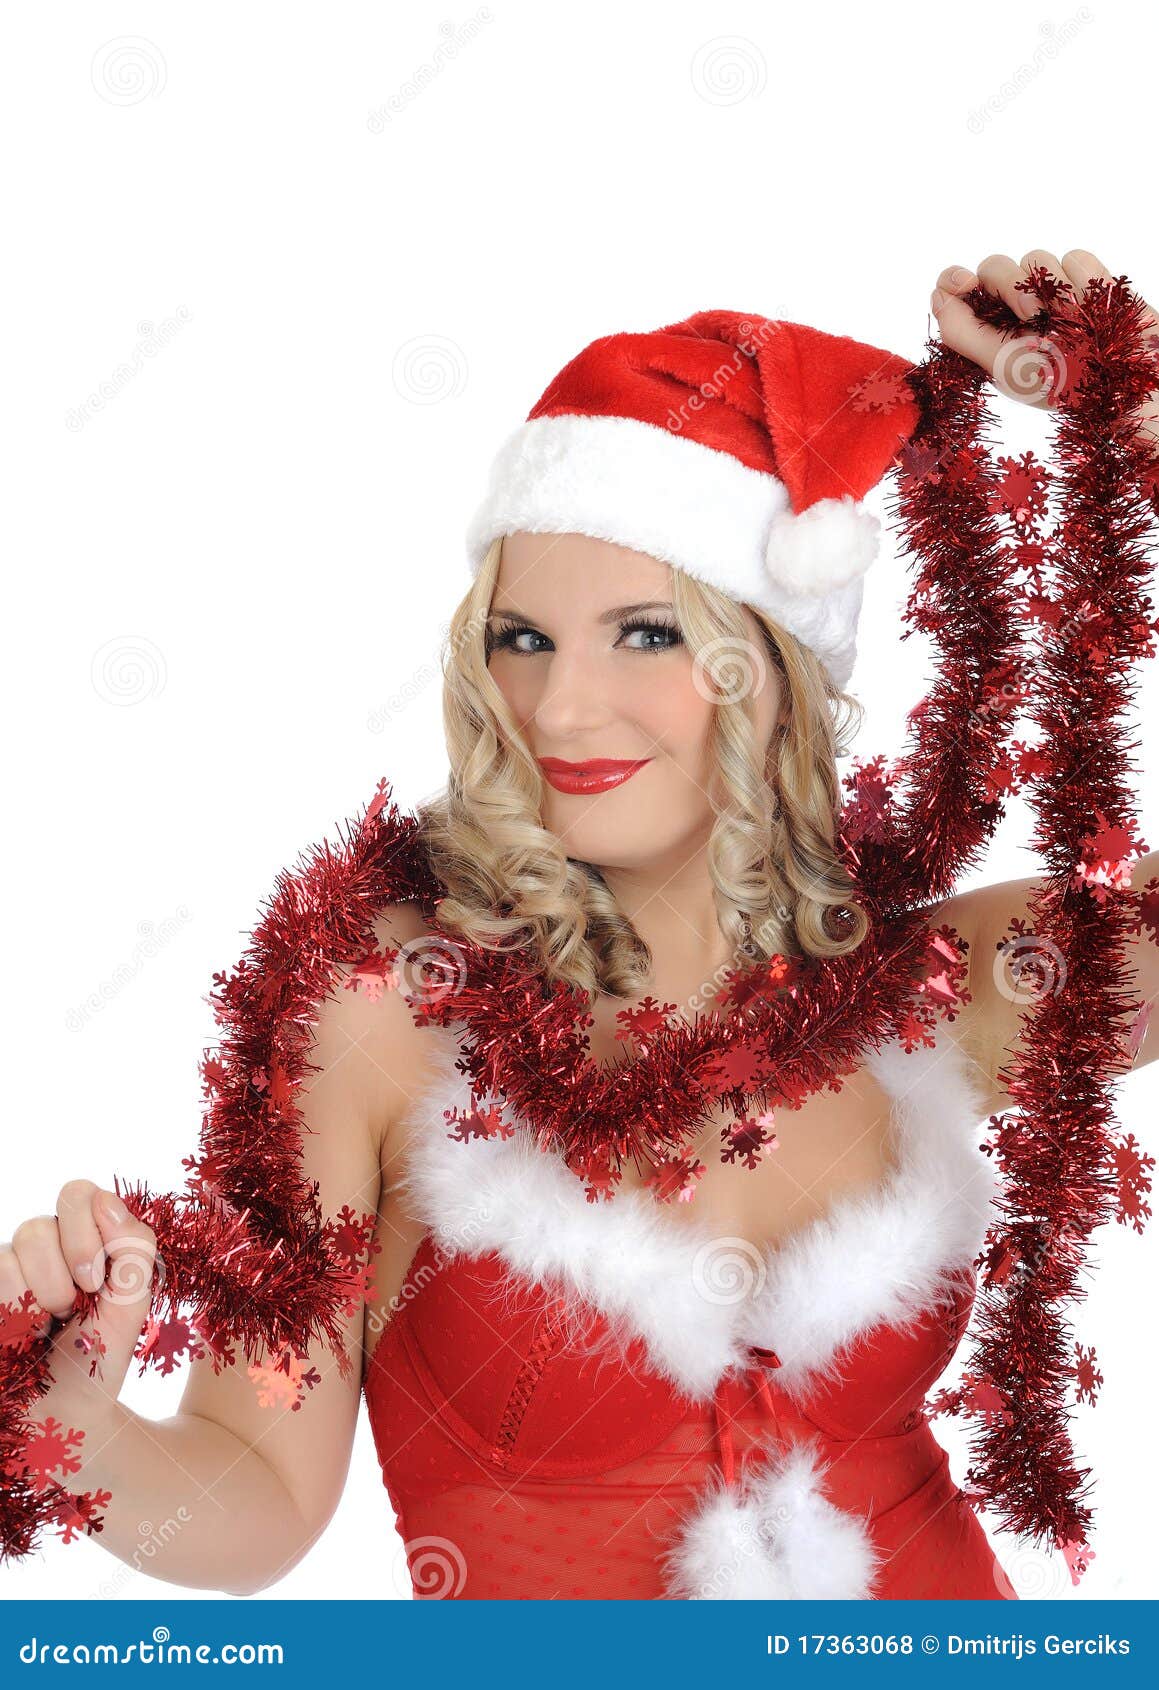 Foto Di Babbo Natale Femmina.Donna Sexy Del Babbo Natale In Vestiti Di Colore Rosso Del Partito Fotografia Stock Immagine Di Cappello Noel 17363068